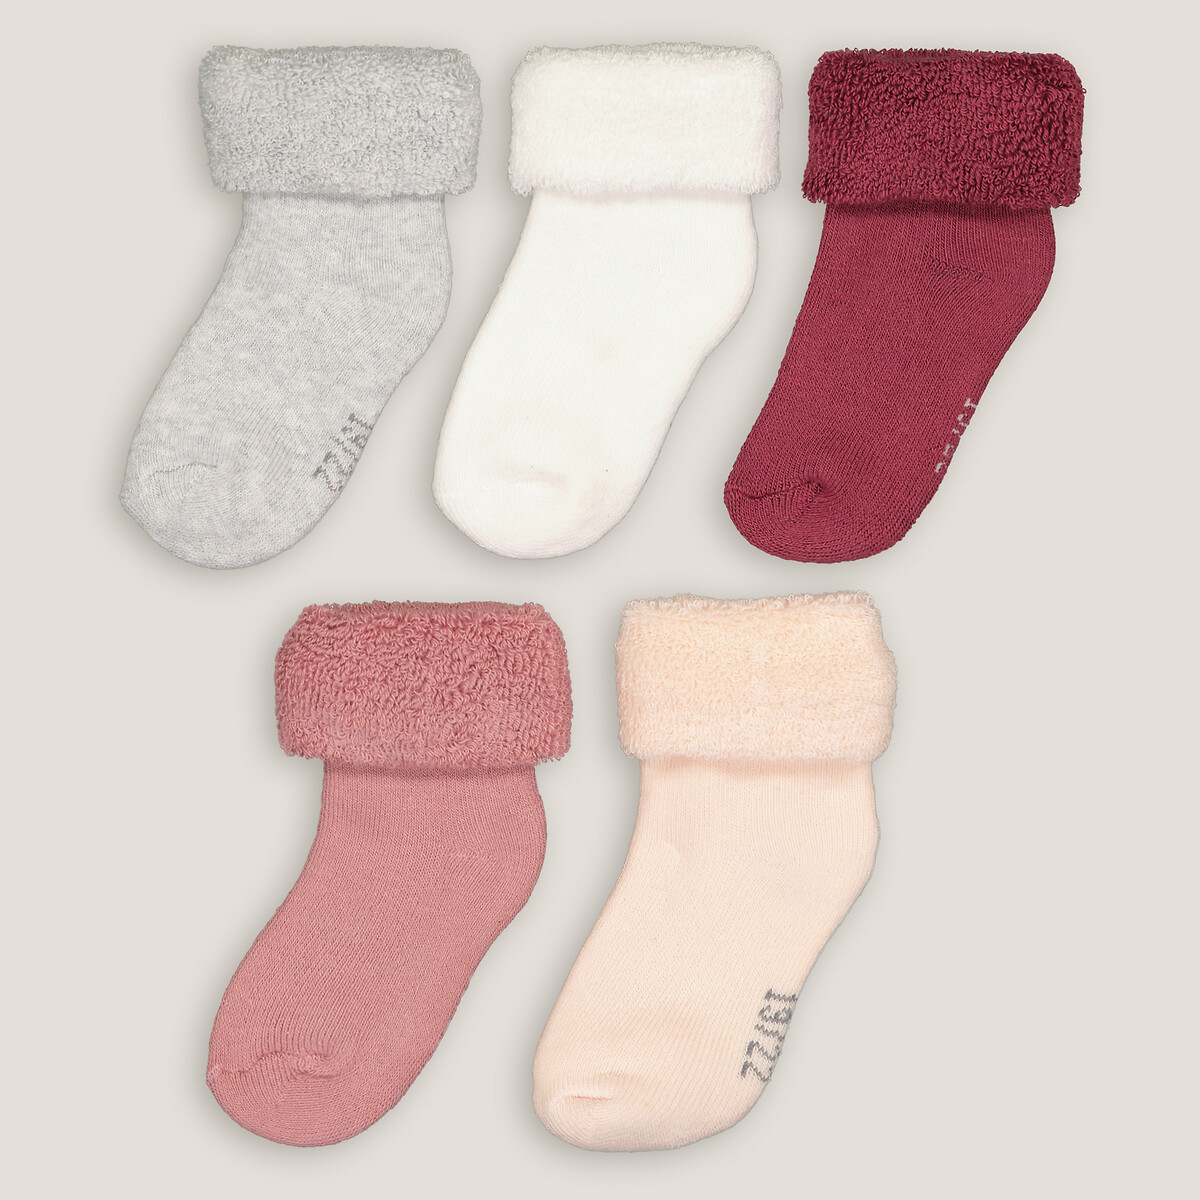 ZOCONE Lot de 6 paires de chaussettes antidérapantes en coton antidérapant pour enfants Automne et hiver Unisexe Confortable Convient pour 0-6 ans 